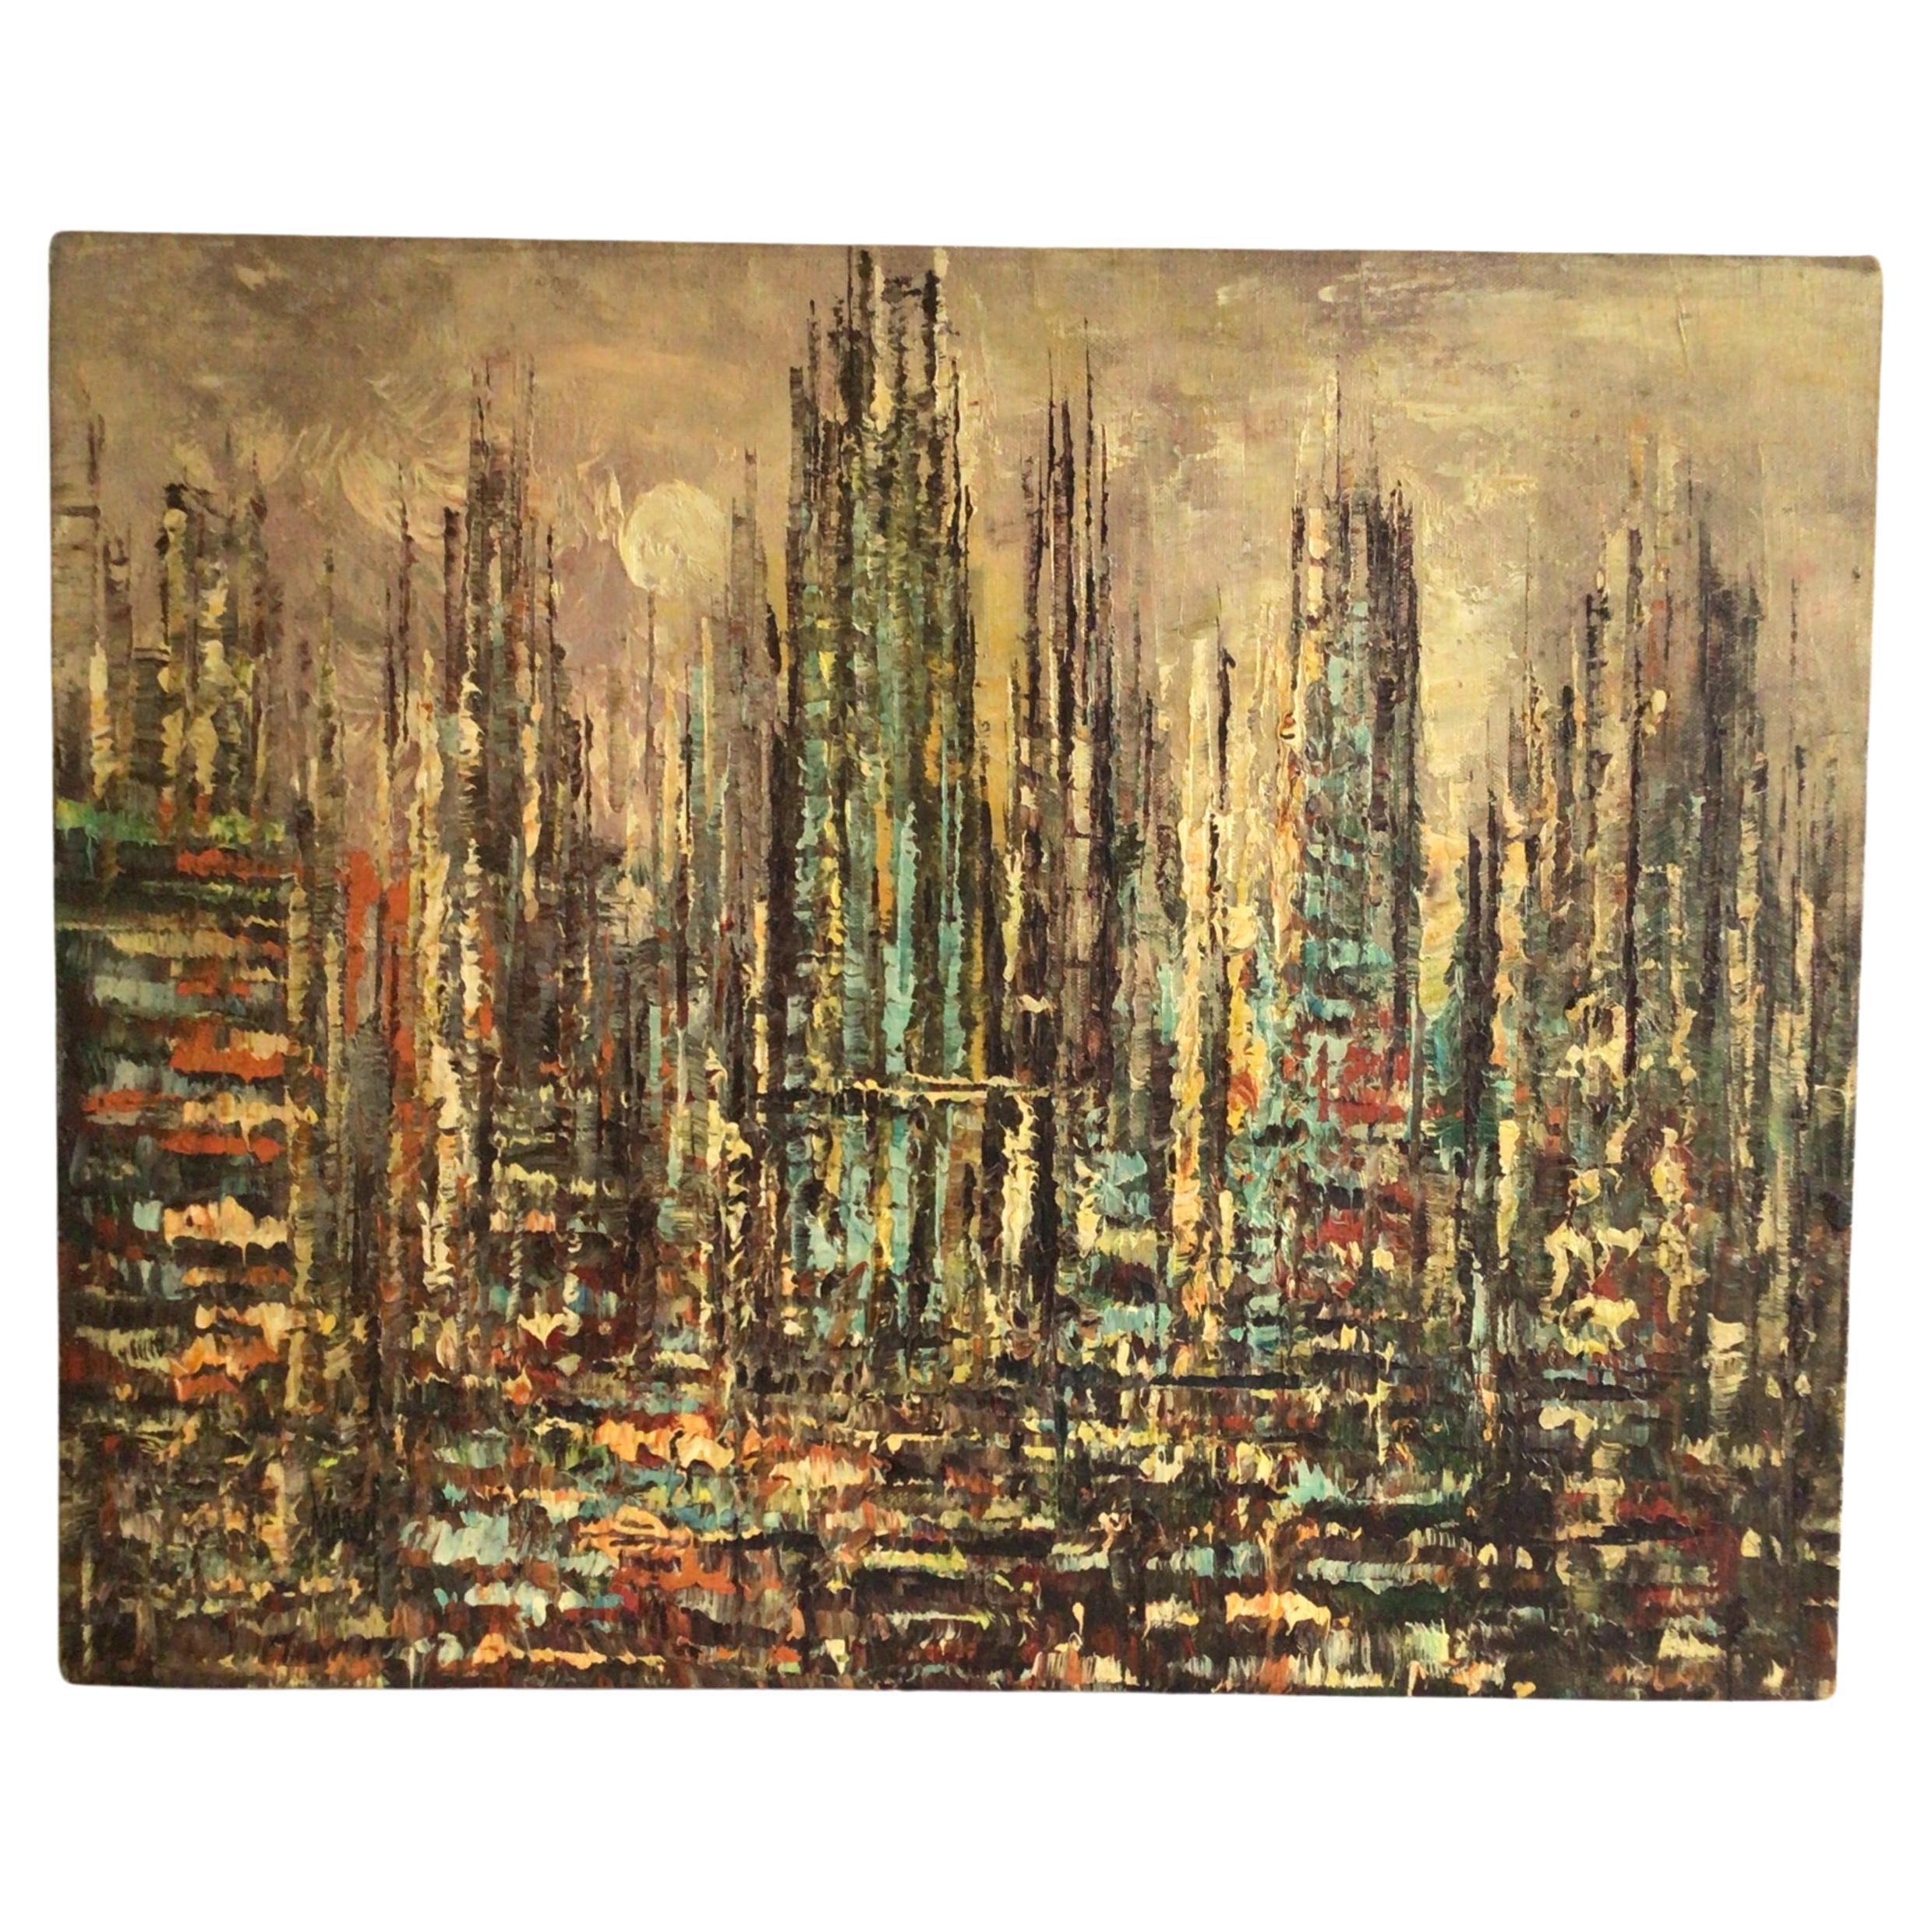 Peinture à l'huile sur toile des années 1950 d'un paysage urbain abstrait